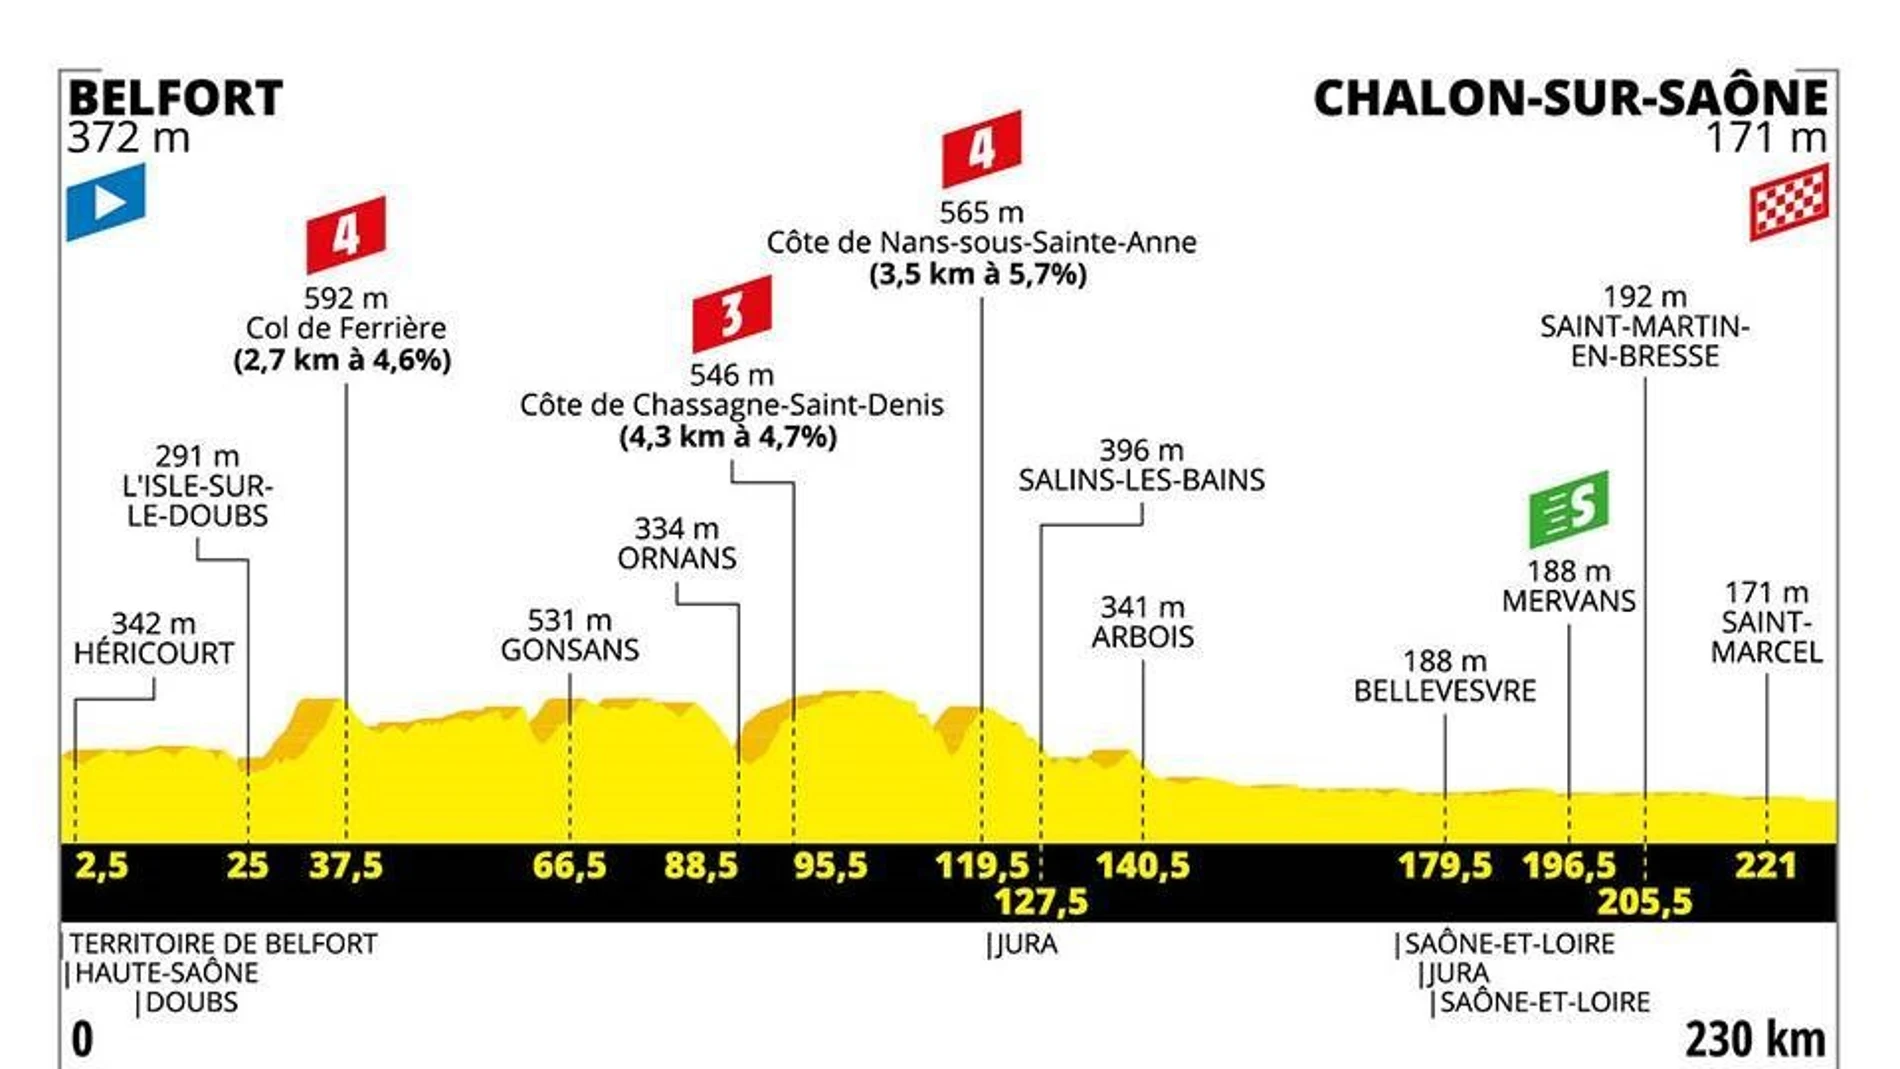 El perfil de la etapa 7 del Tour de Francia